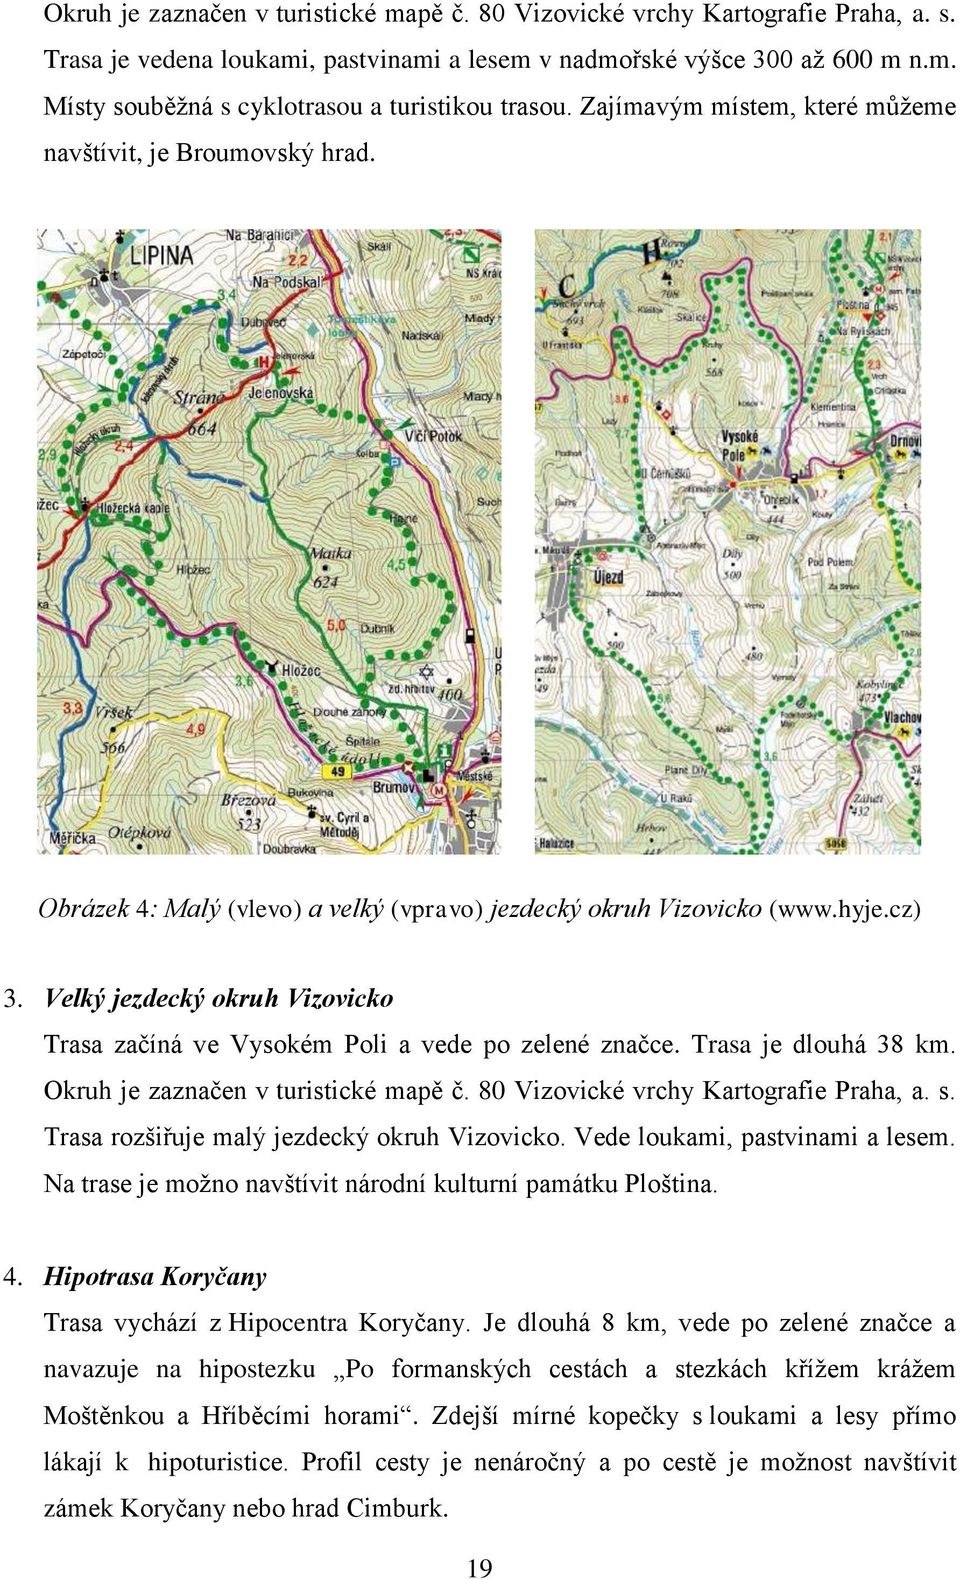 Velký jezdecký okruh Vizovicko Trasa začíná ve Vysokém Poli a vede po zelené značce. Trasa je dlouhá 38 km. Okruh je zaznačen v turistické mapě č. 80 Vizovické vrchy Kartografie Praha, a. s.